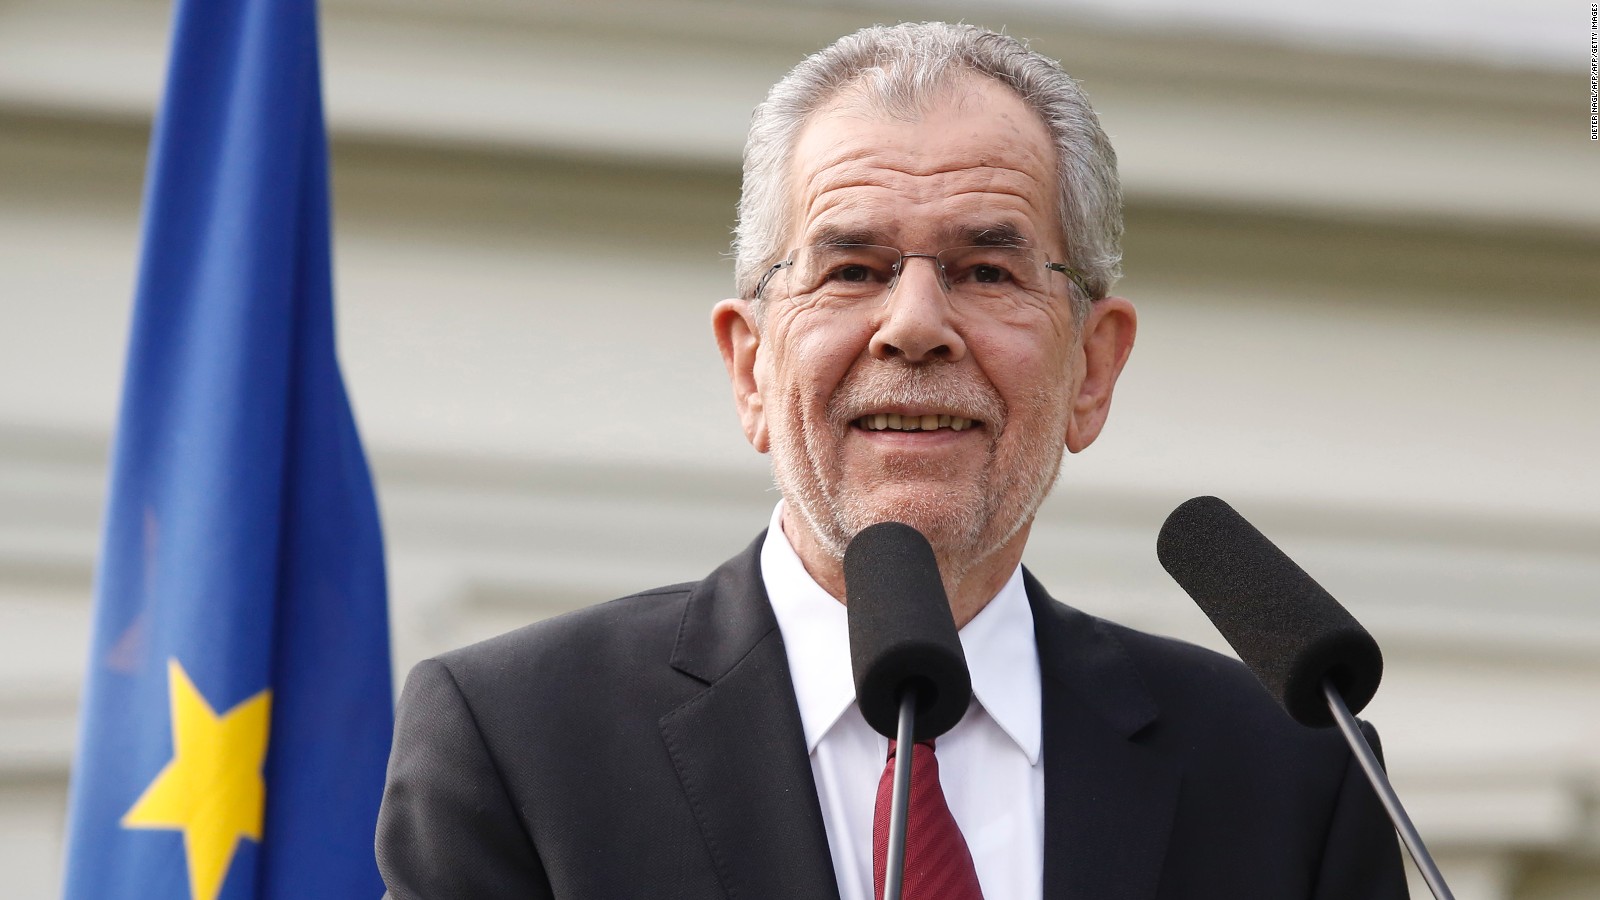 presidenti-austriak:-shpresojme-te-gjendet-nje-zgjidhje-e-qendrueshme-mes-kosoves-dhe-serbise